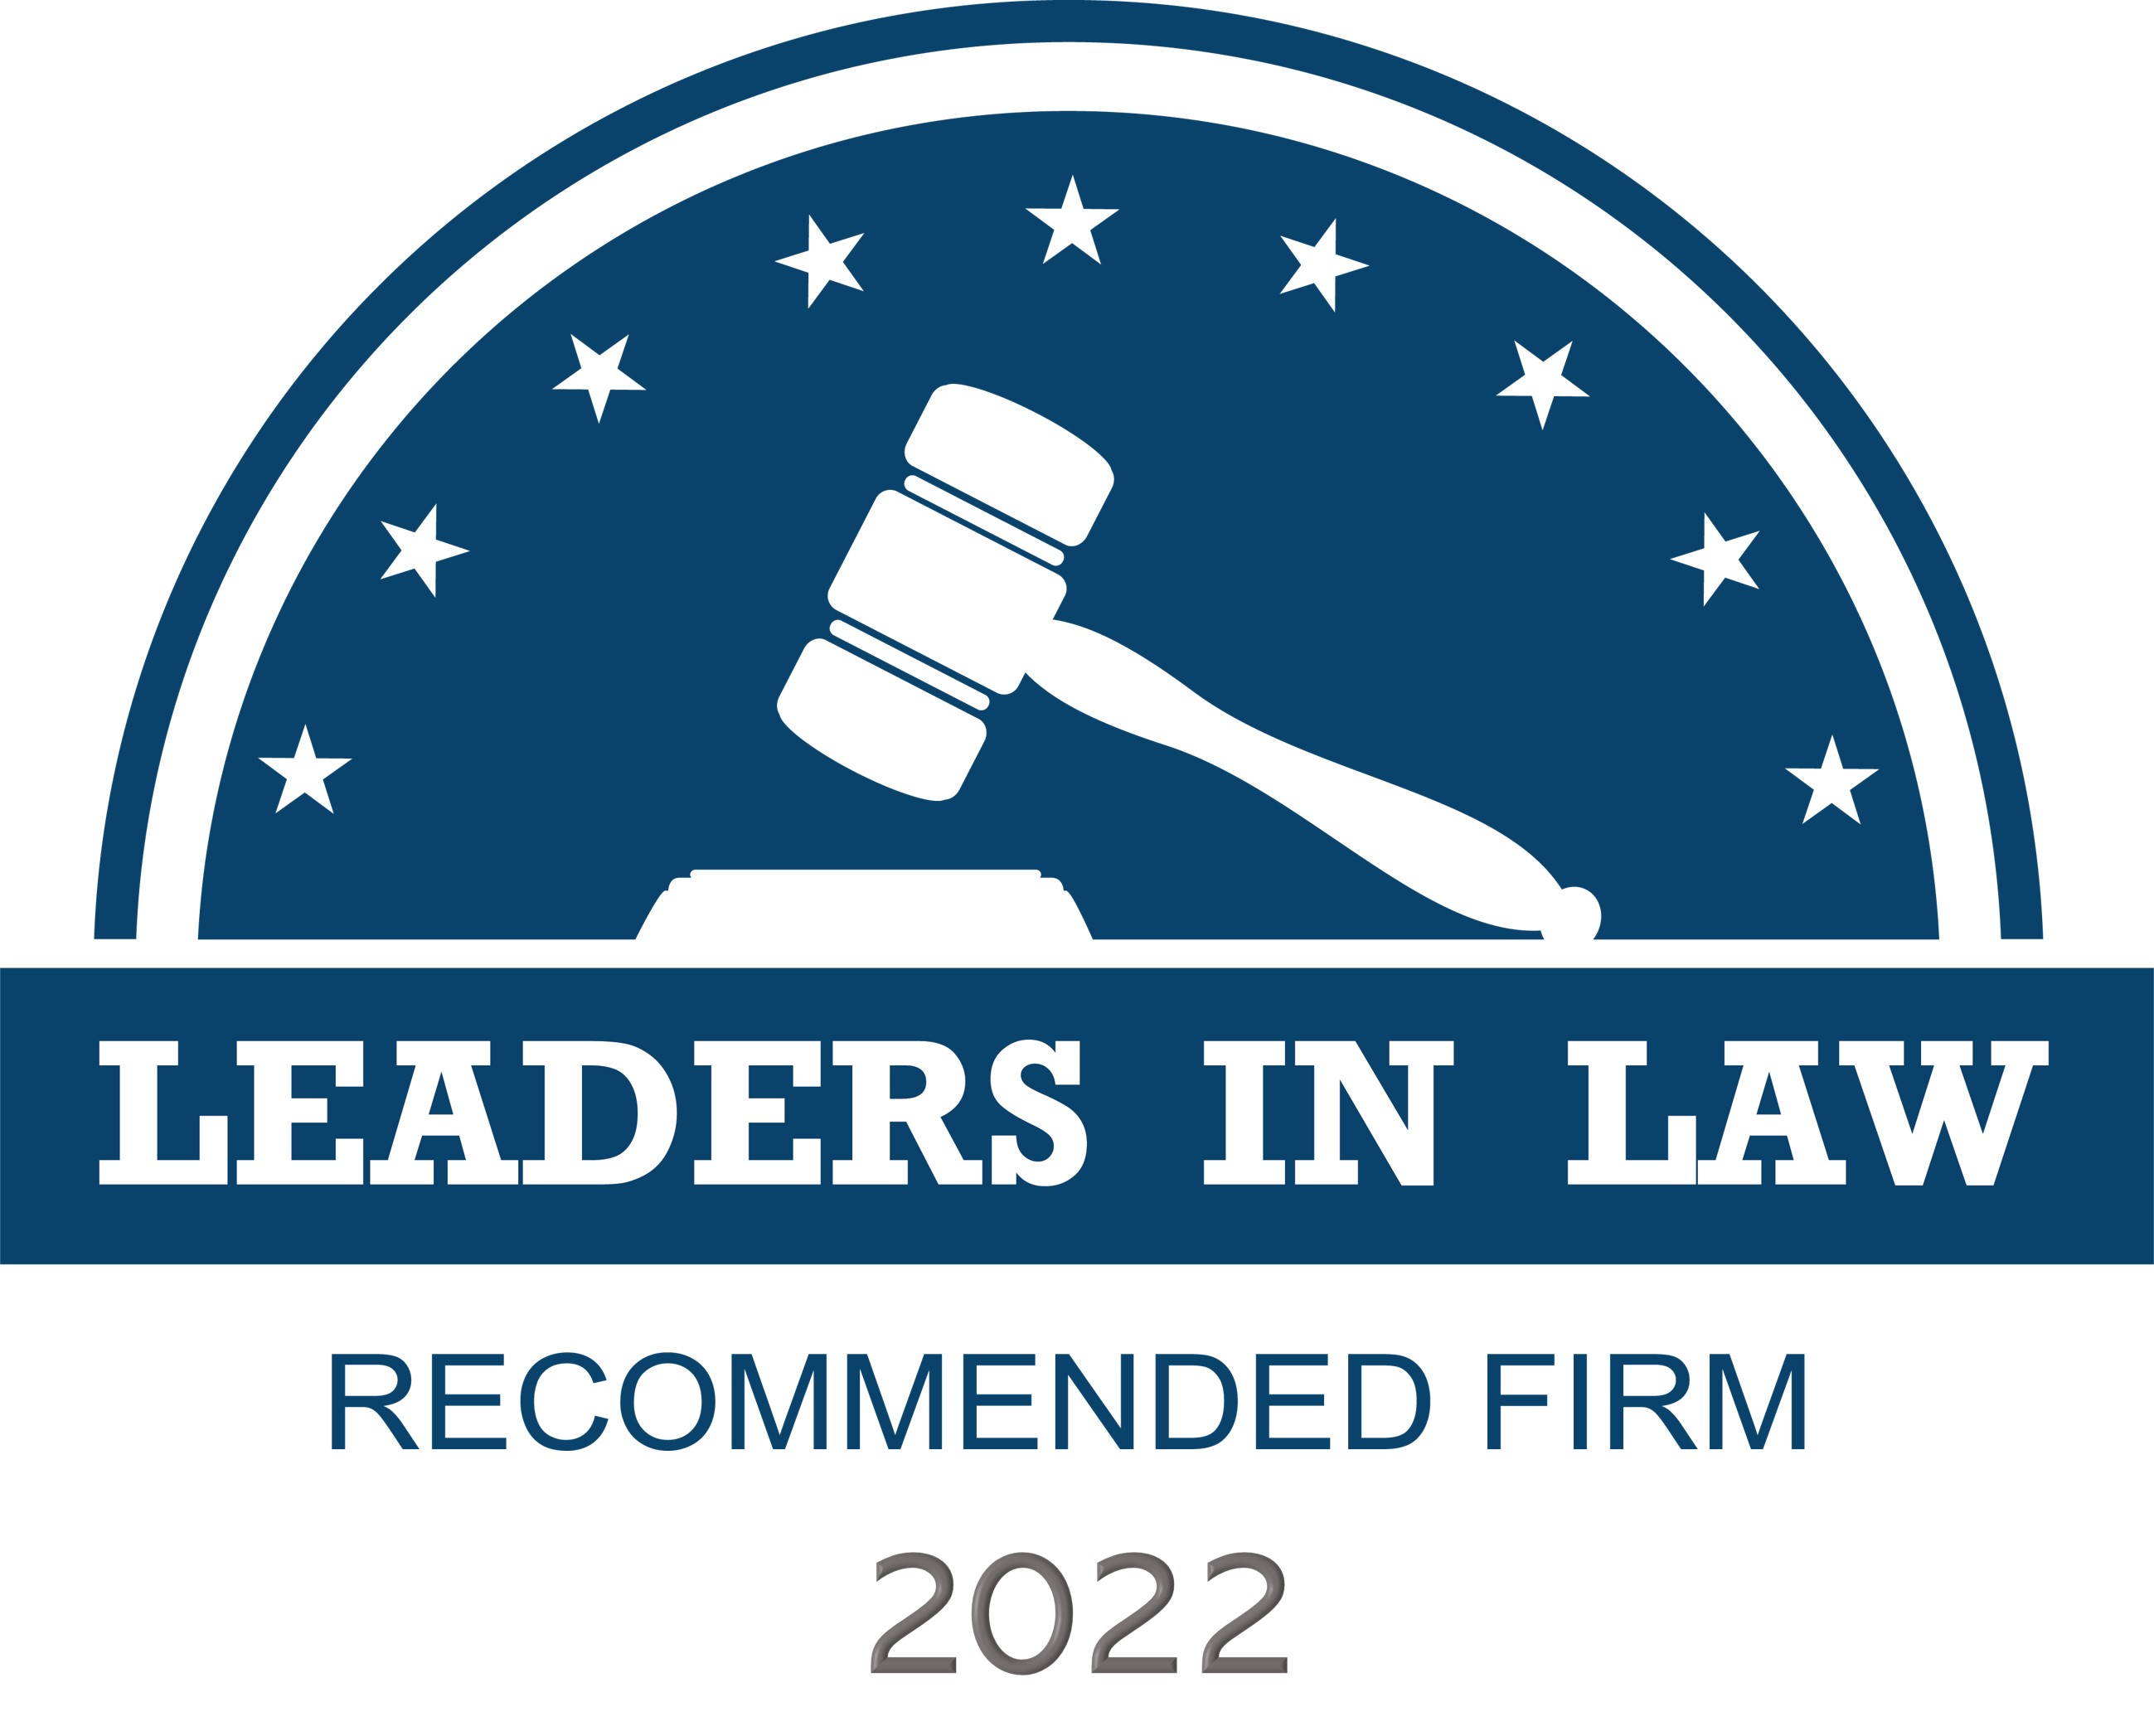 Leaders in Law 2022年度香港区兼并与收购领域的唯一认可律师事务所和法律专家